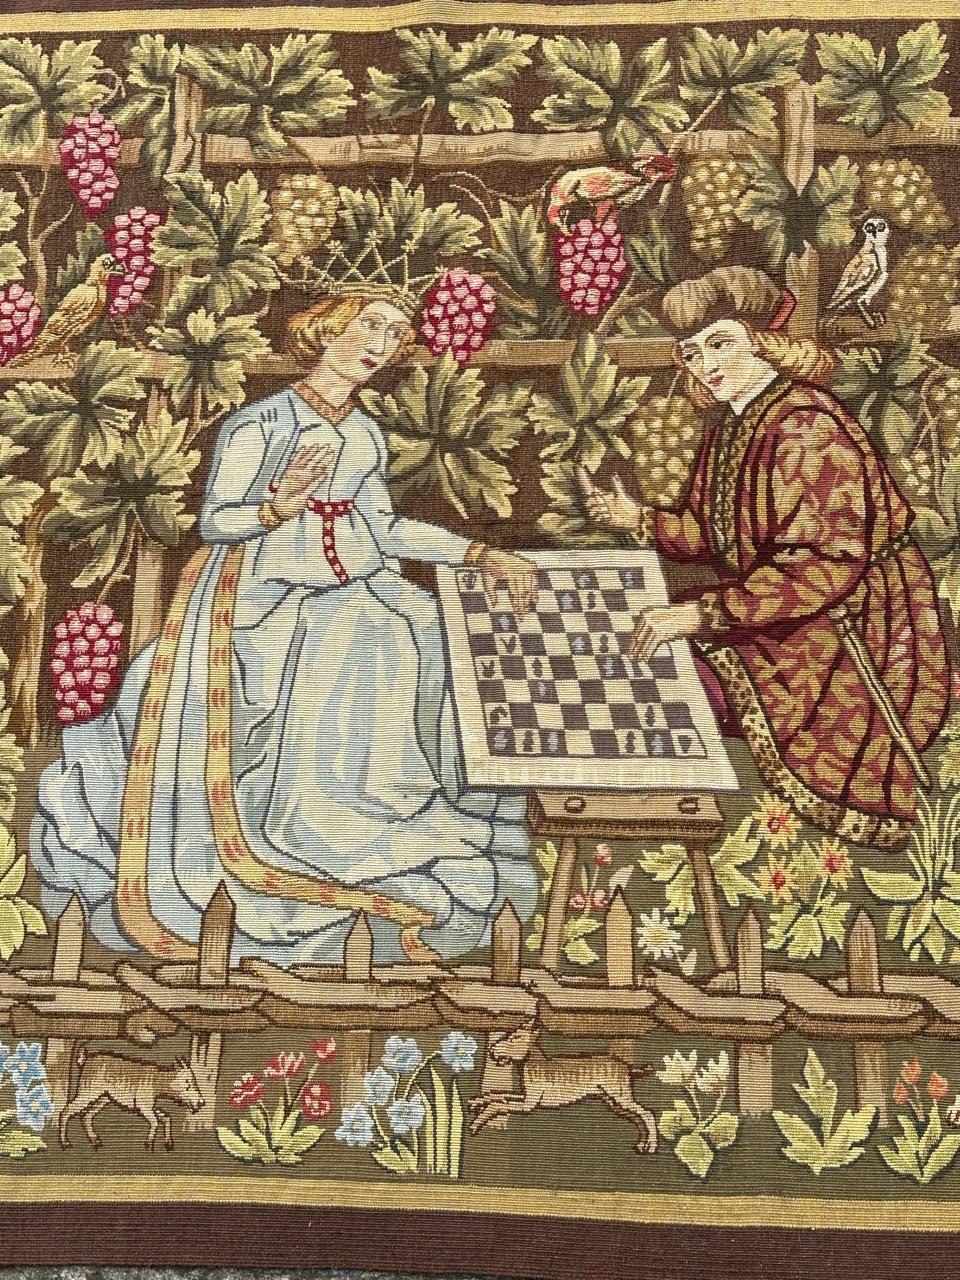 Sehr schöne und Aubusson Wandteppich mit einem schönen Design mit einem mittelalterlichen Design mit dem König und der Königin spielen Schach, mit schönen Farben, mit gelb, grün, braun, blau und, rosa und rot, ganz und fein mit Wolle in Aubusson